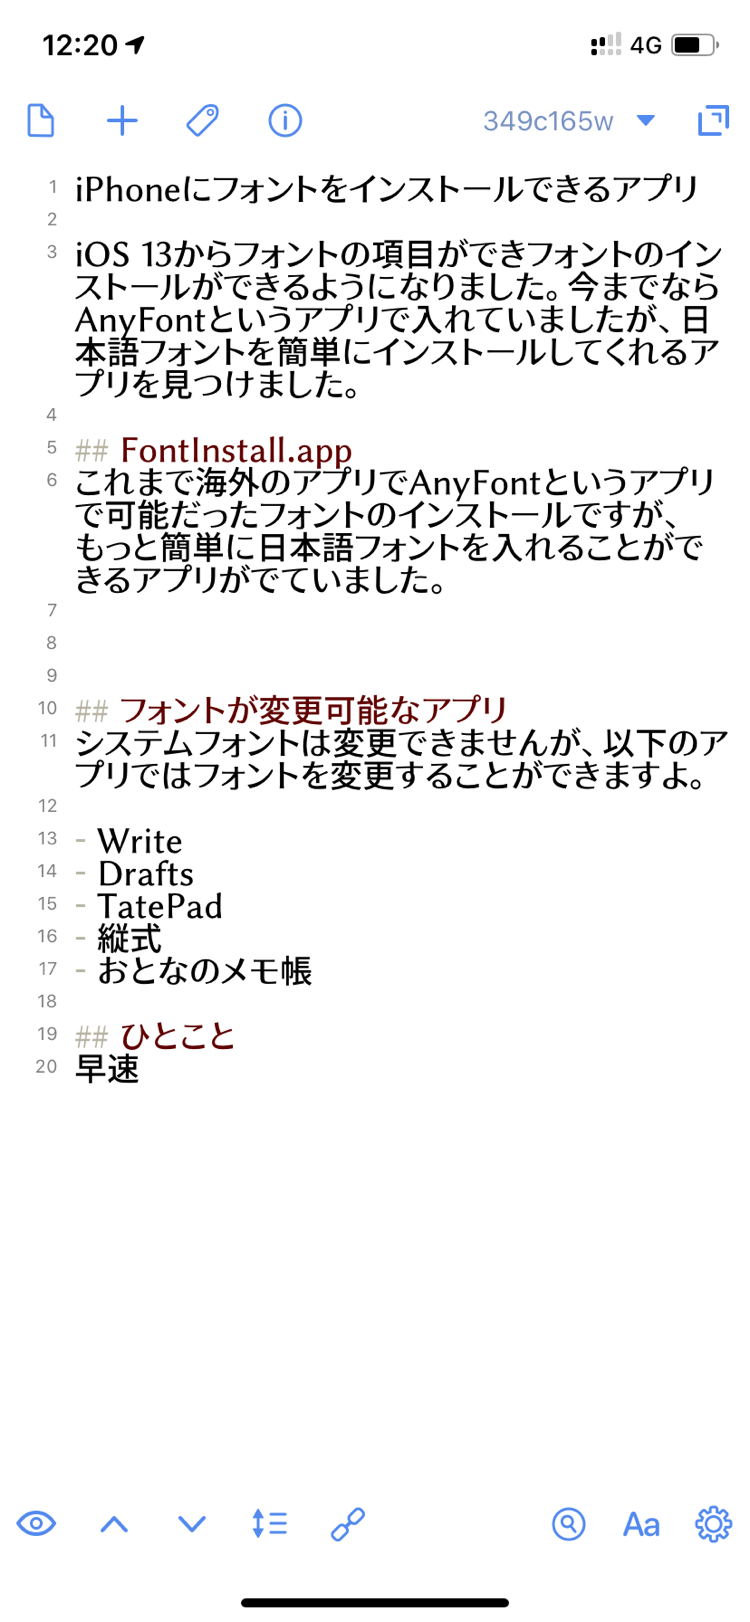 Iphone フォント インストール Iphoneに可愛い日本語文字フォント等を追加できるアプリphont